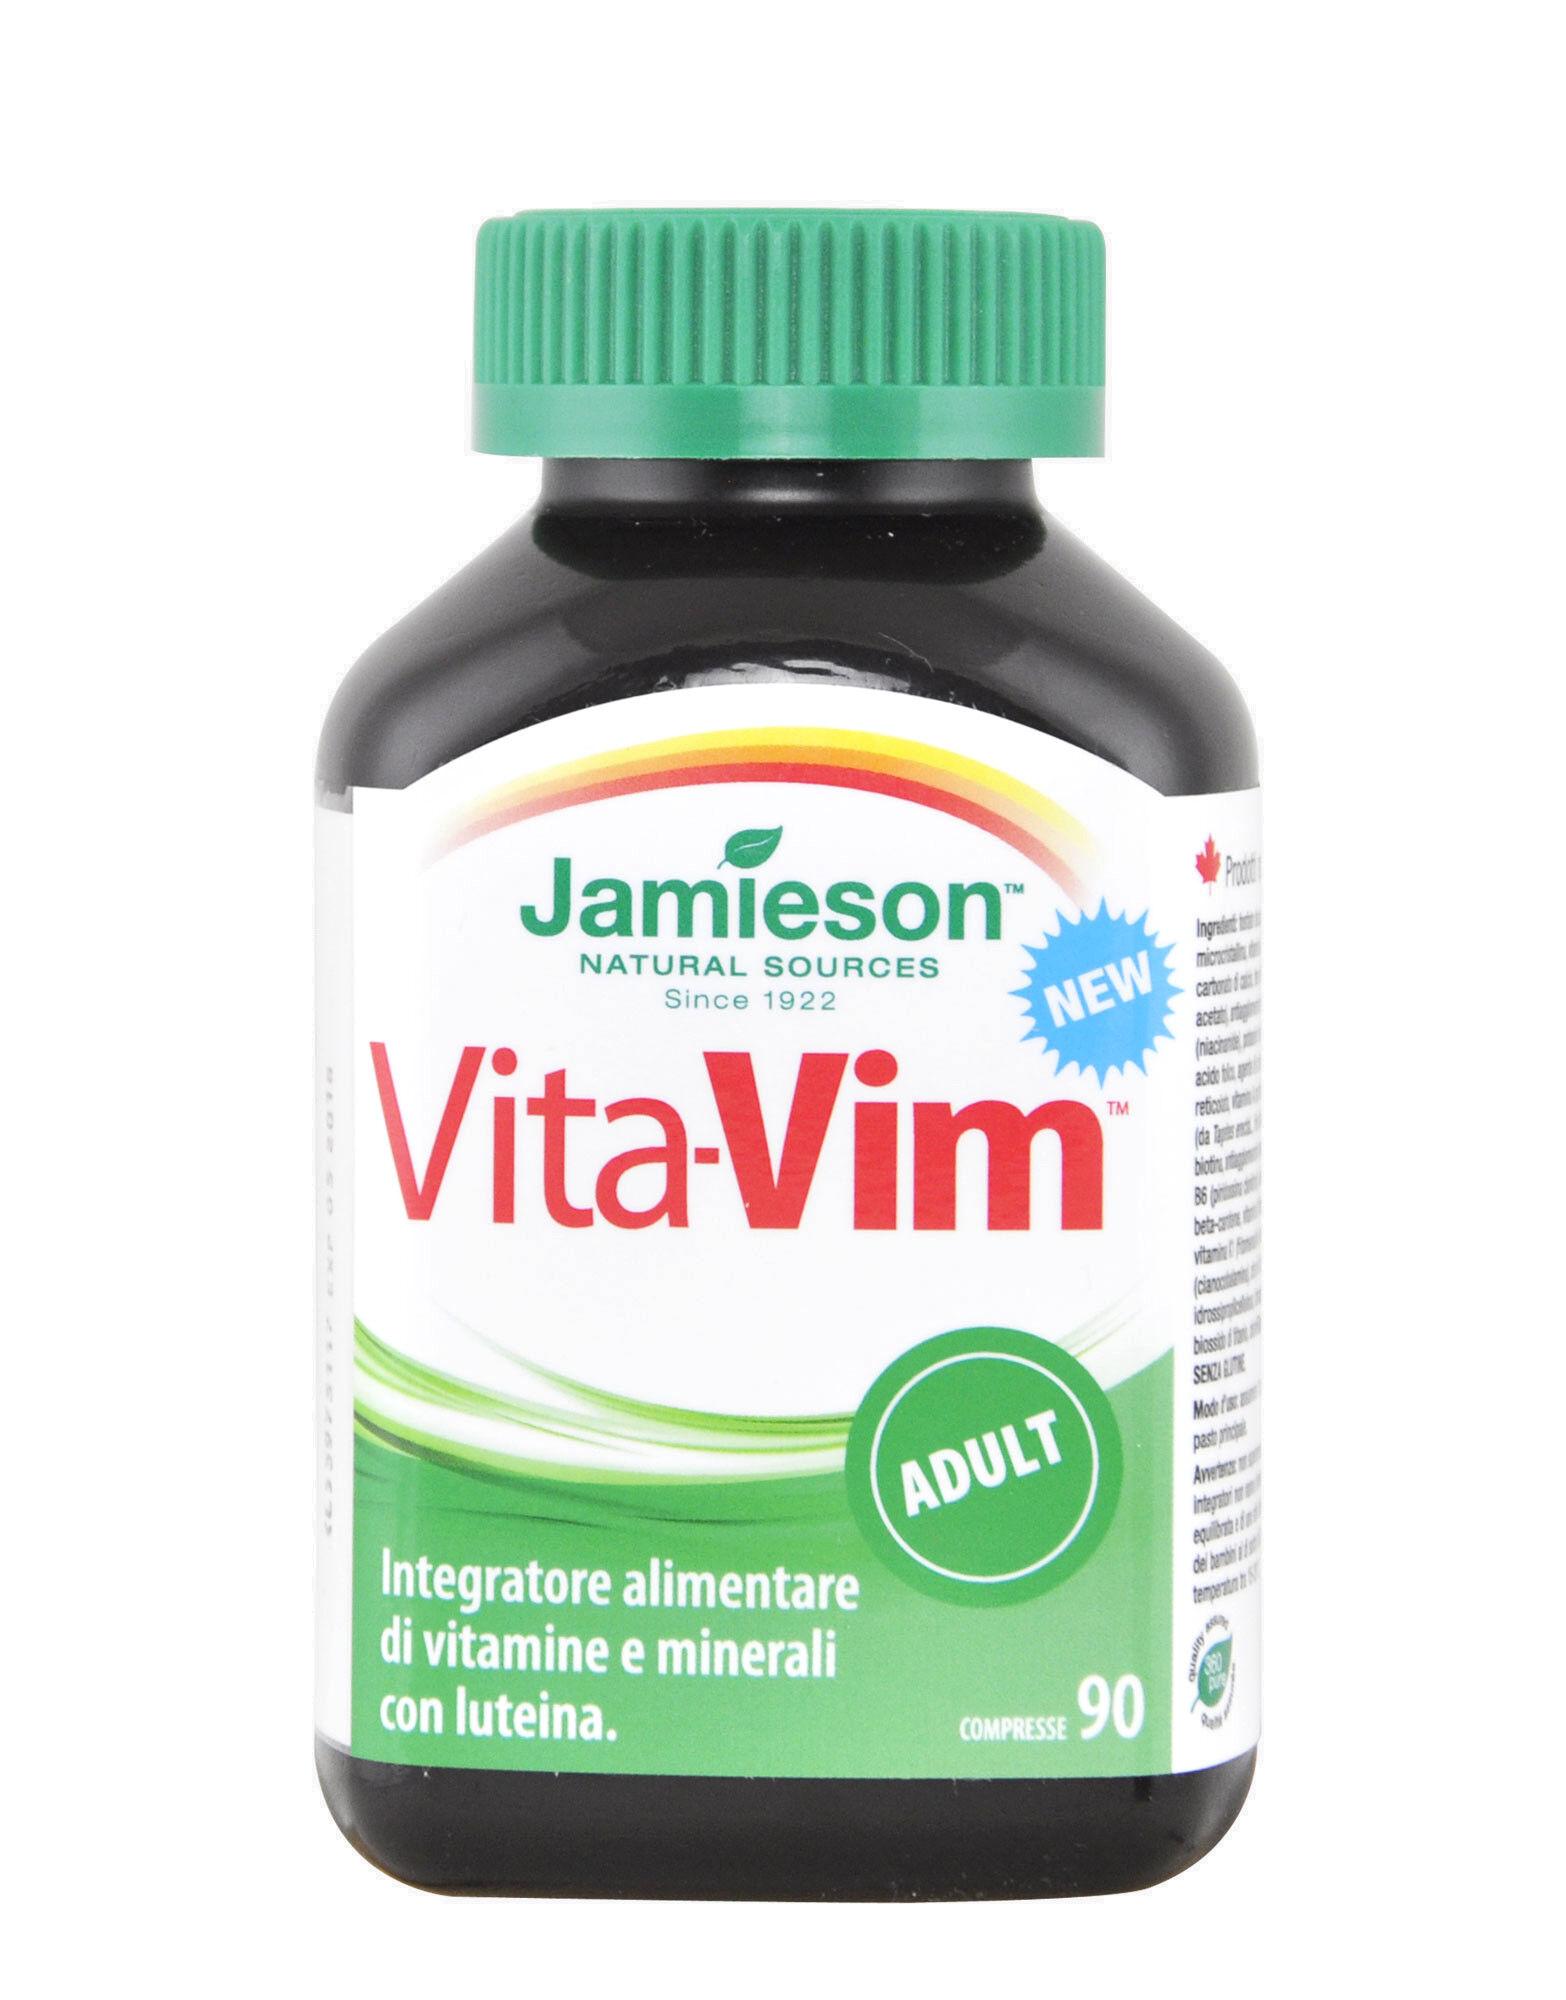 JAMIESON Vita-Vim Adult 90 Compresse